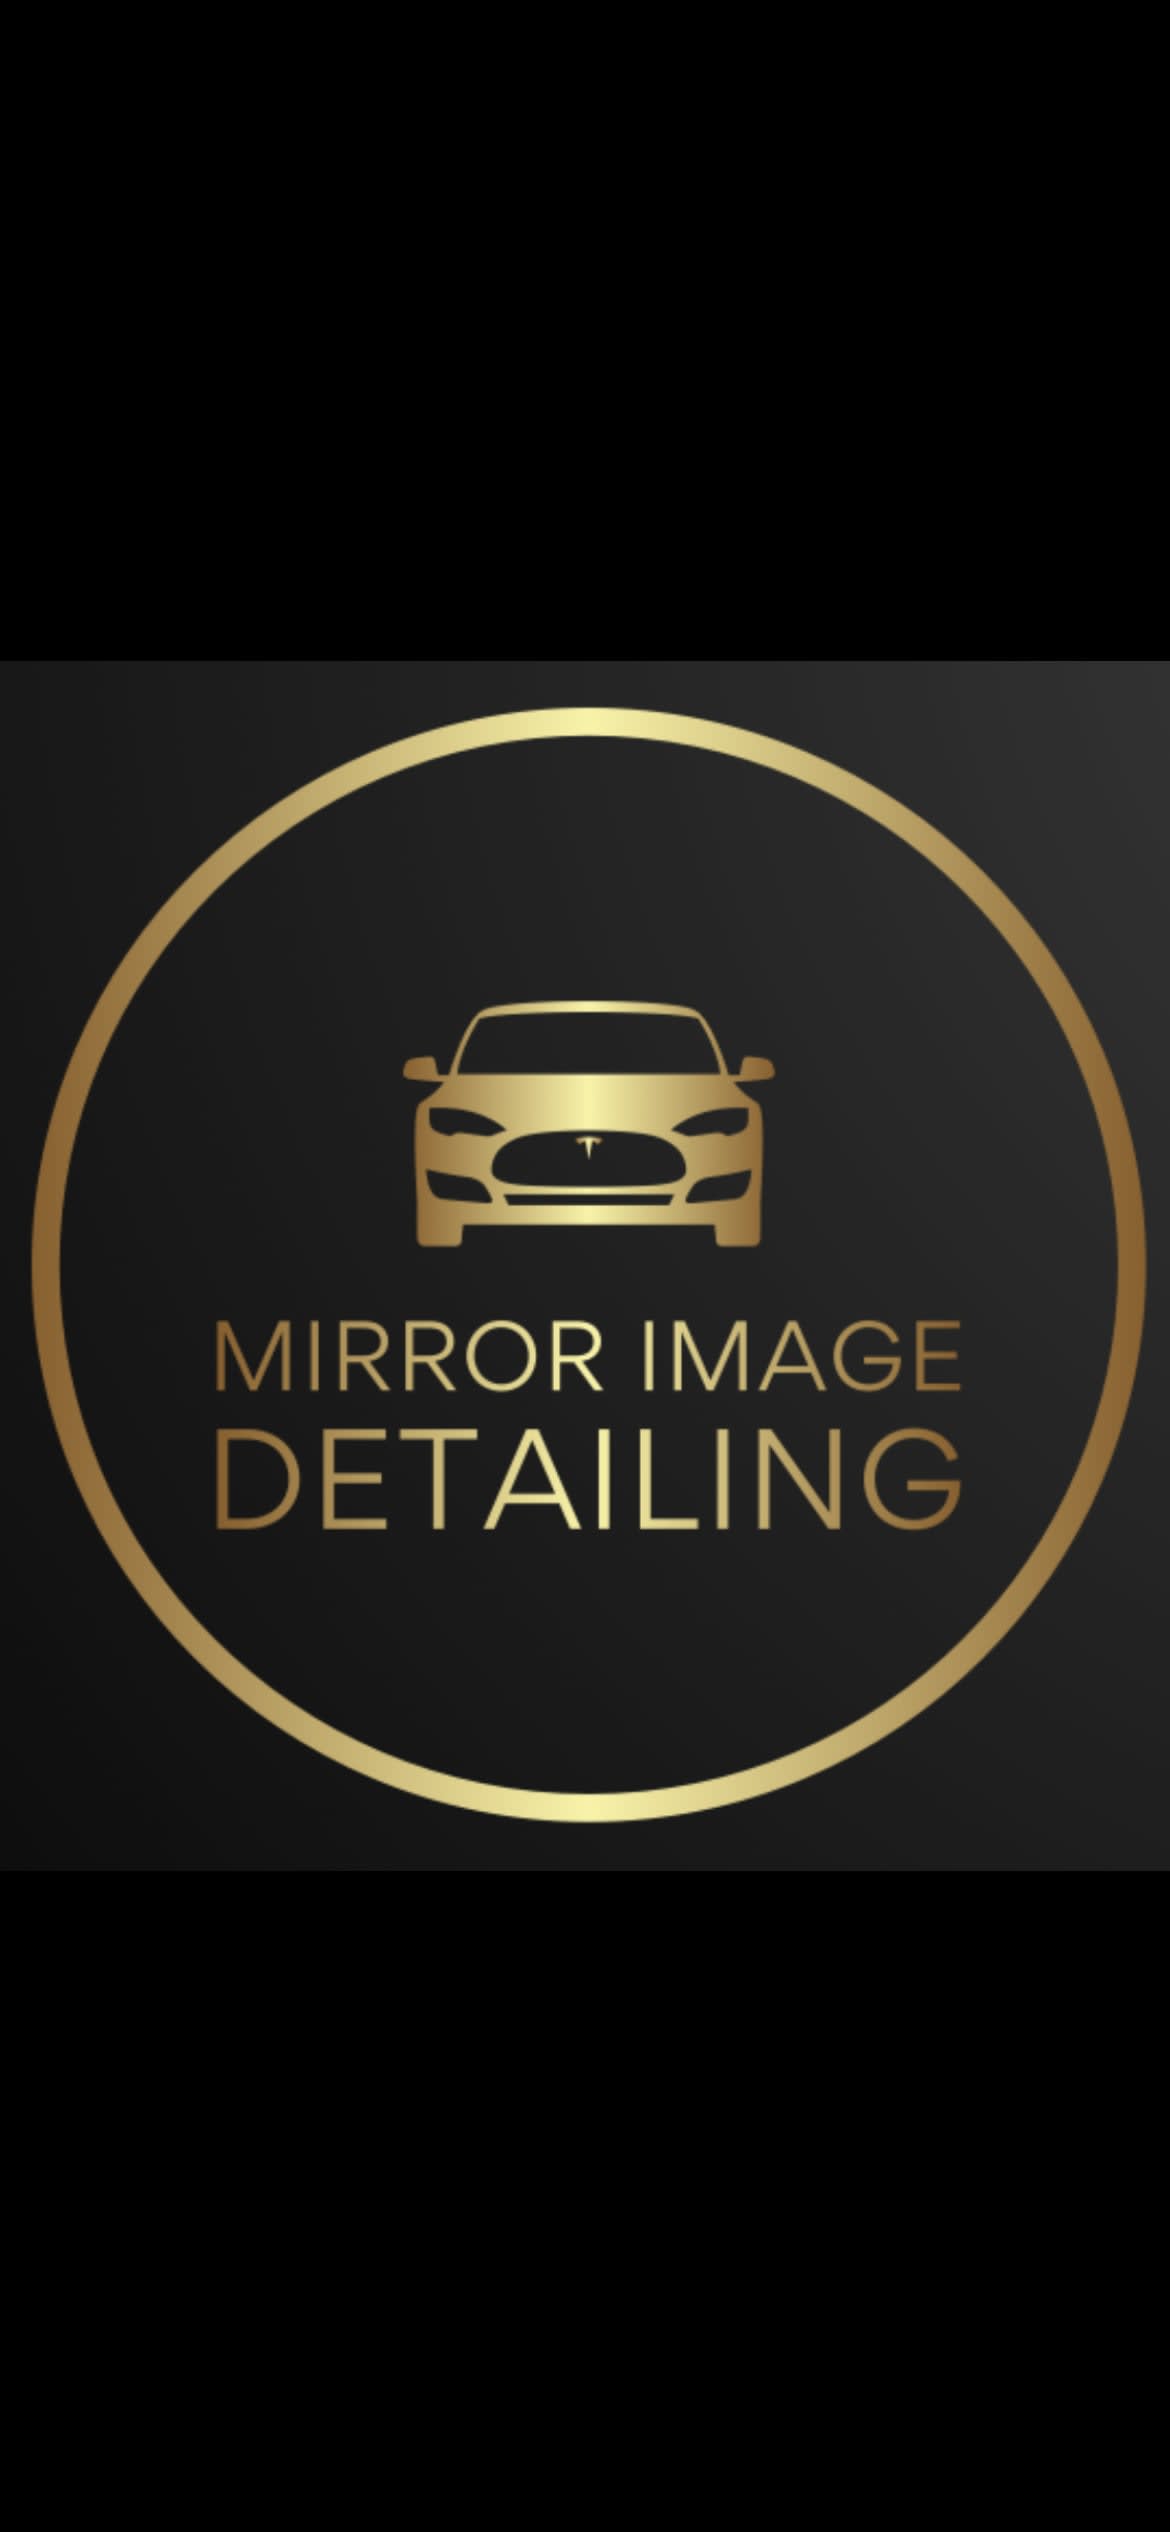 Mirror Image Detailing